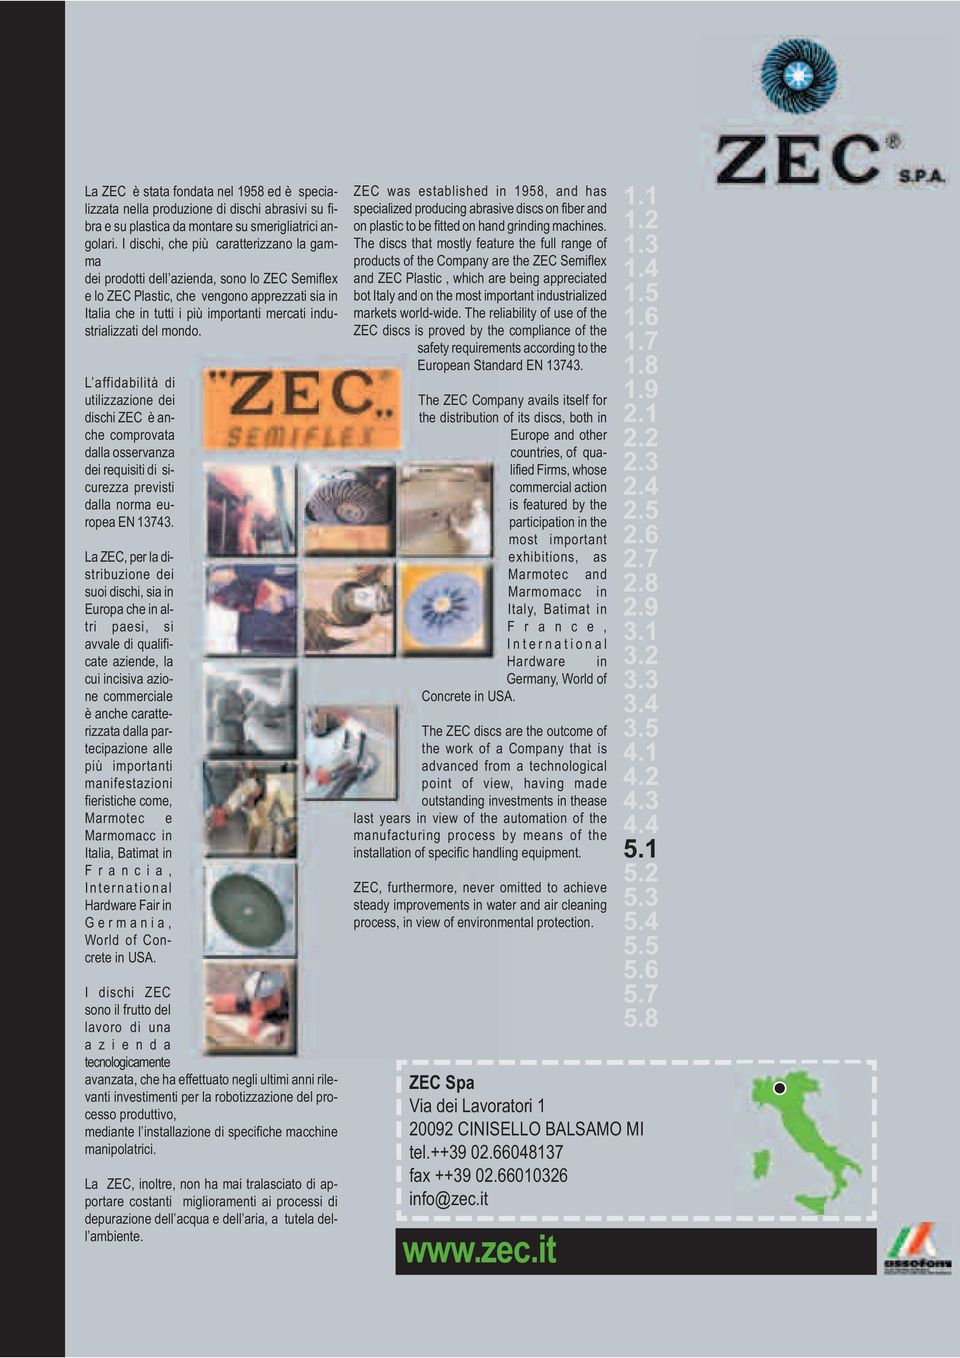 del mondo. L affidabilità di utilizzazione dei dischi ZEC è anche comprovata dalla osservanza dei requisiti di sicurezza previsti dalla norma europea EN 13743.